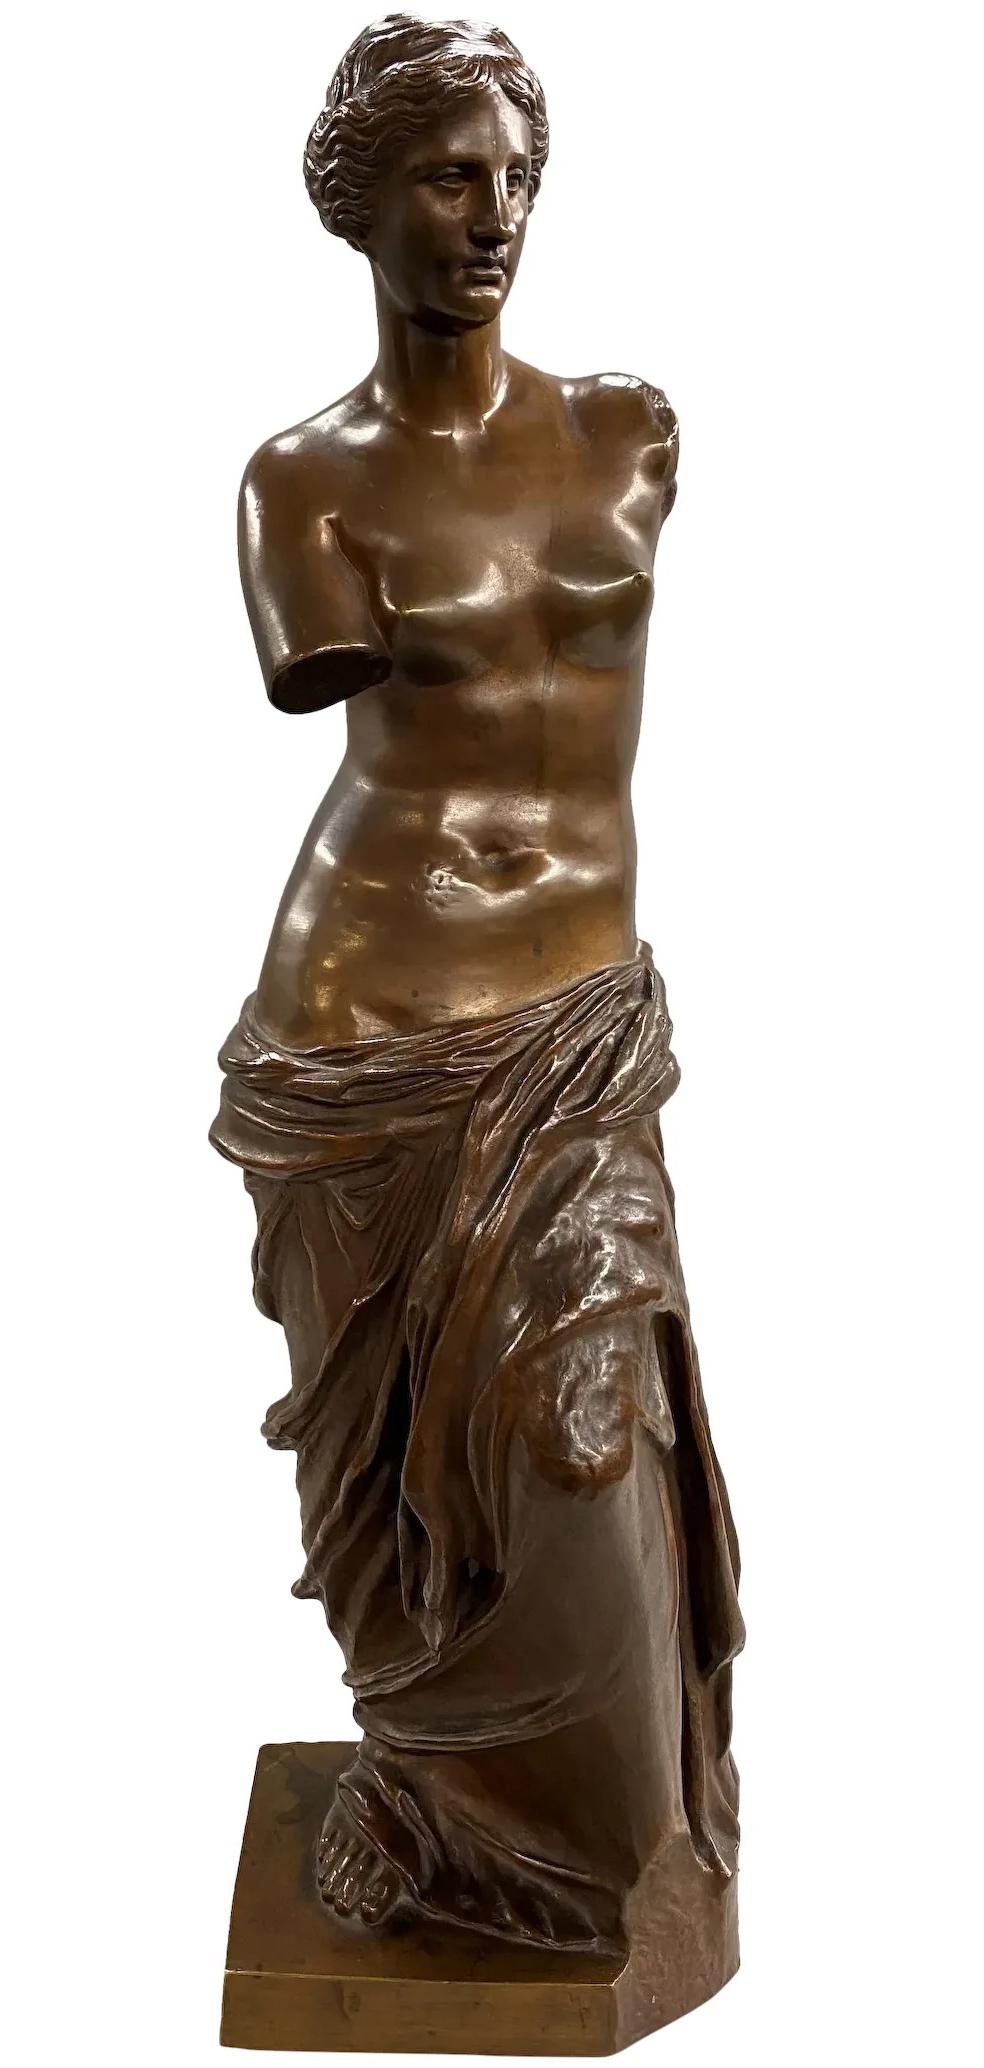 Ron Liod Sauvage Nude Sculpture - Venus de Milo